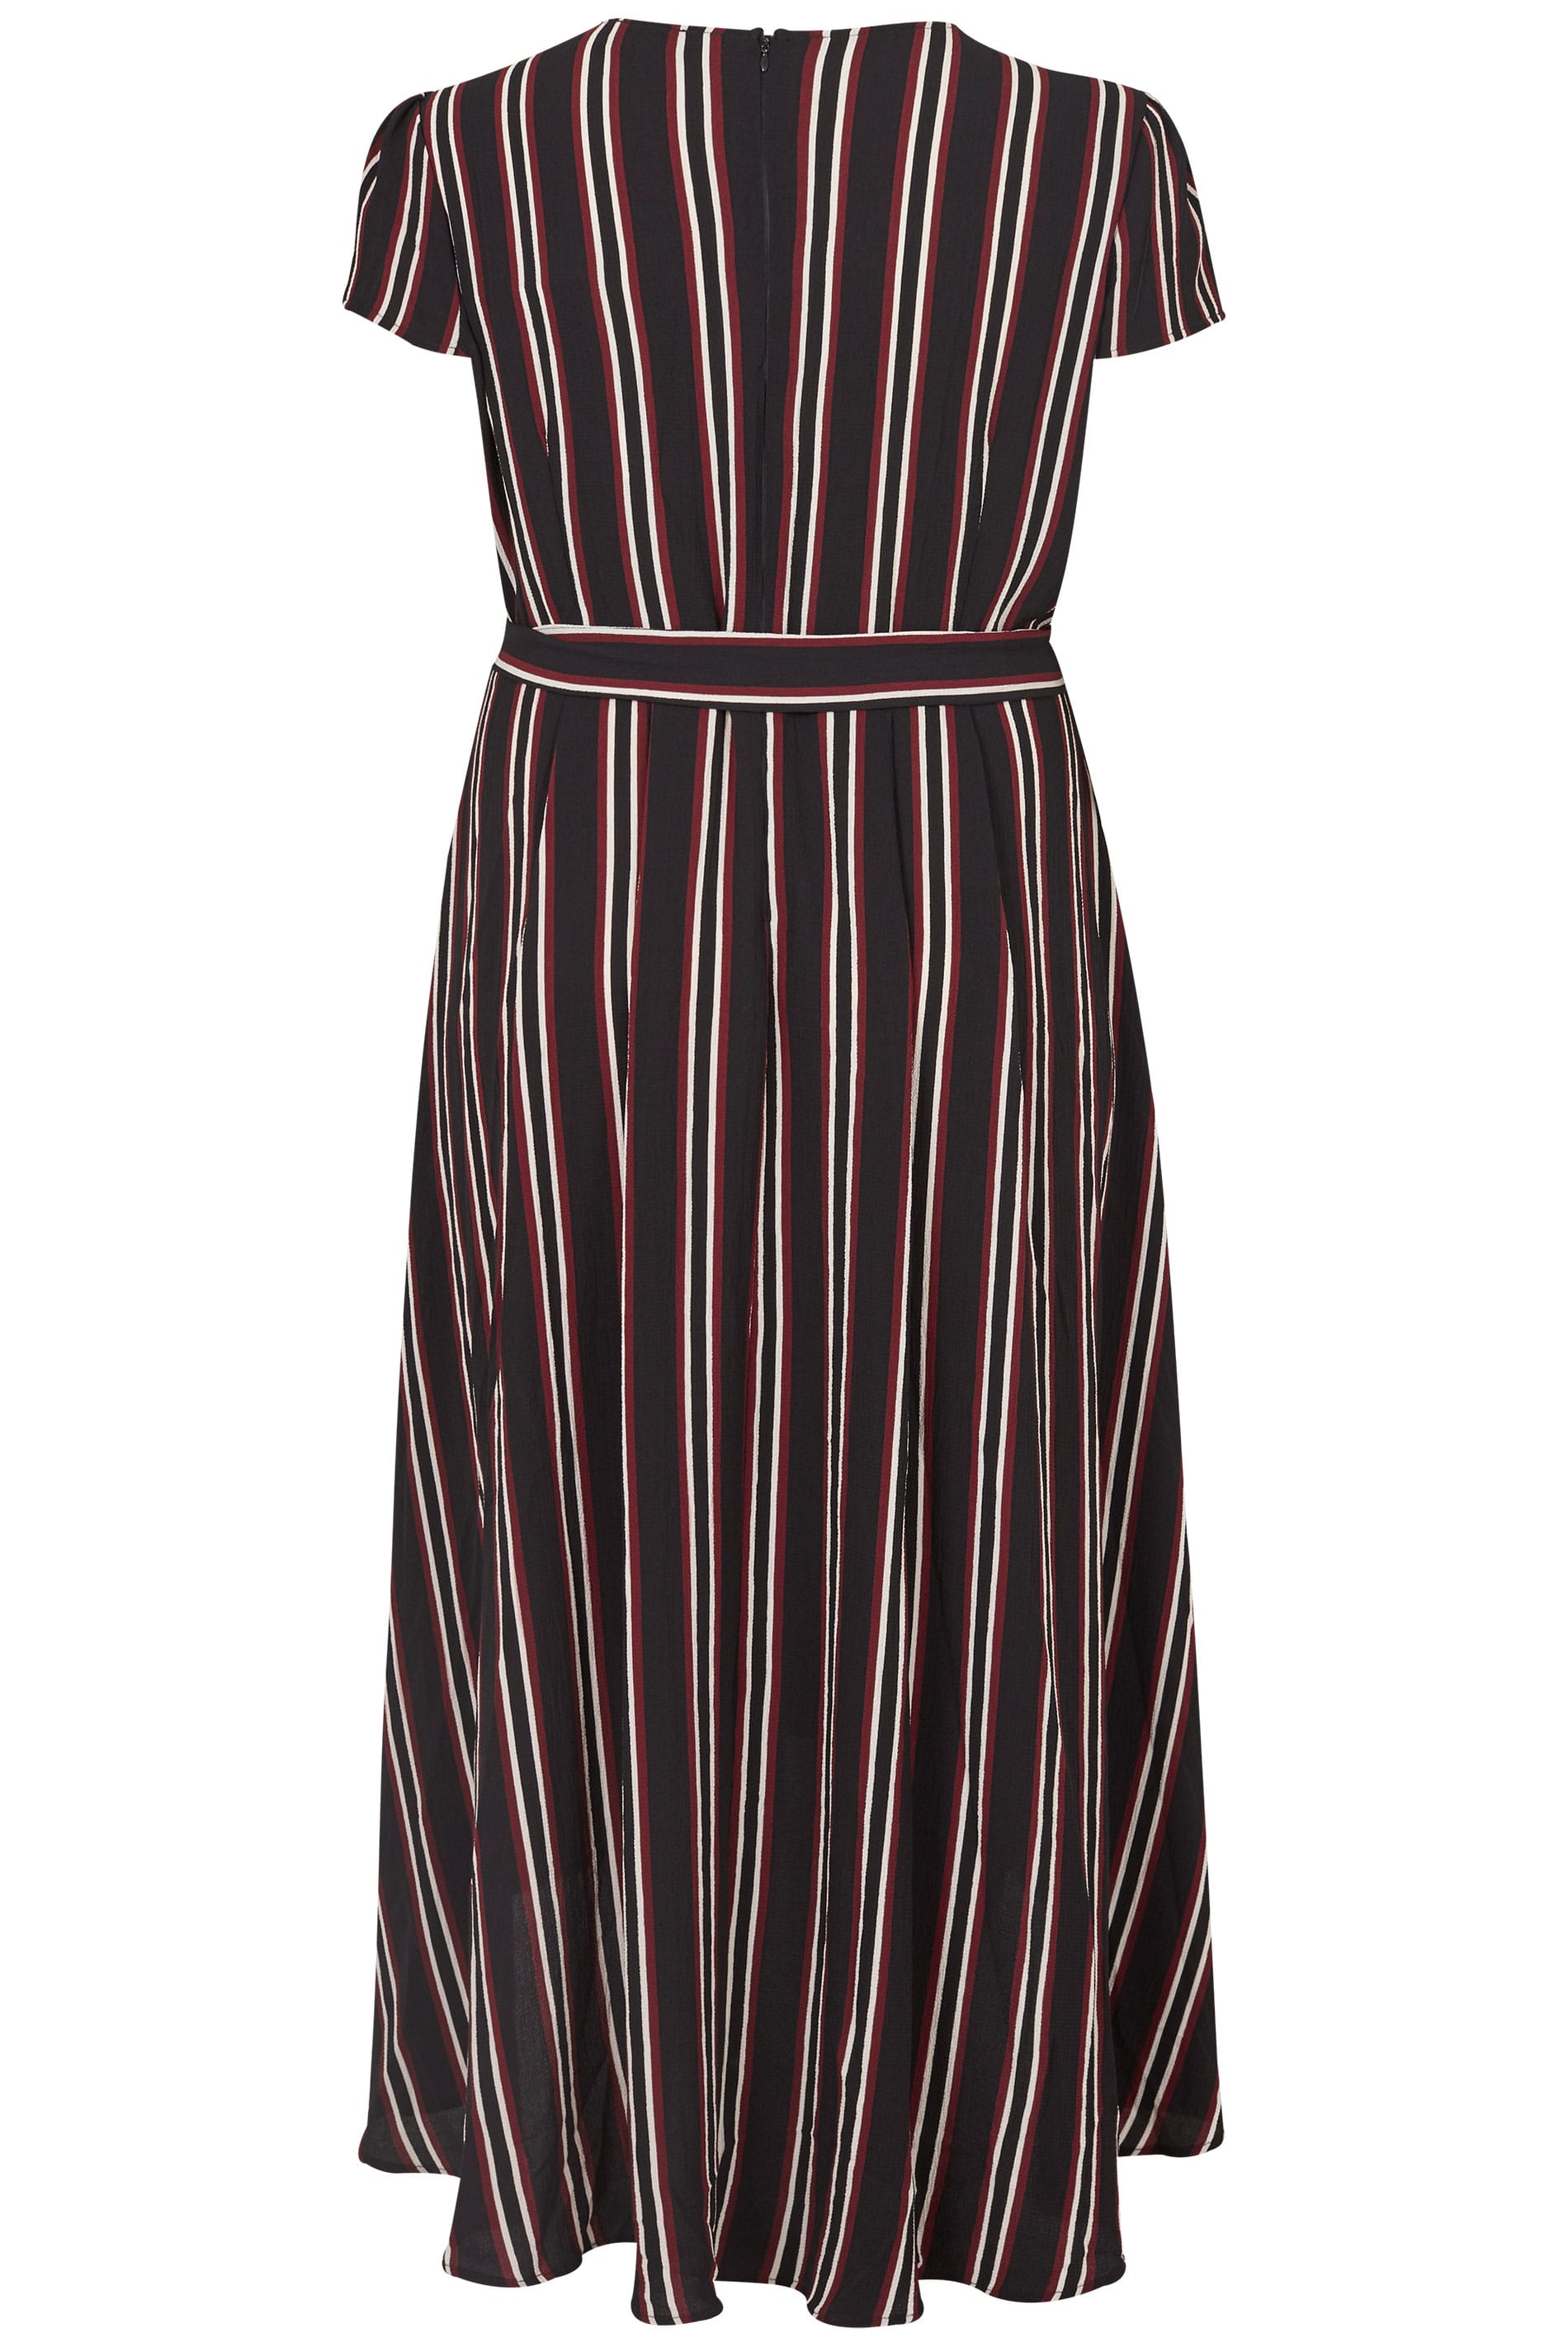 AX PARIS CURVE Black Stripe Wrap Dress, Plus size 16 to 26